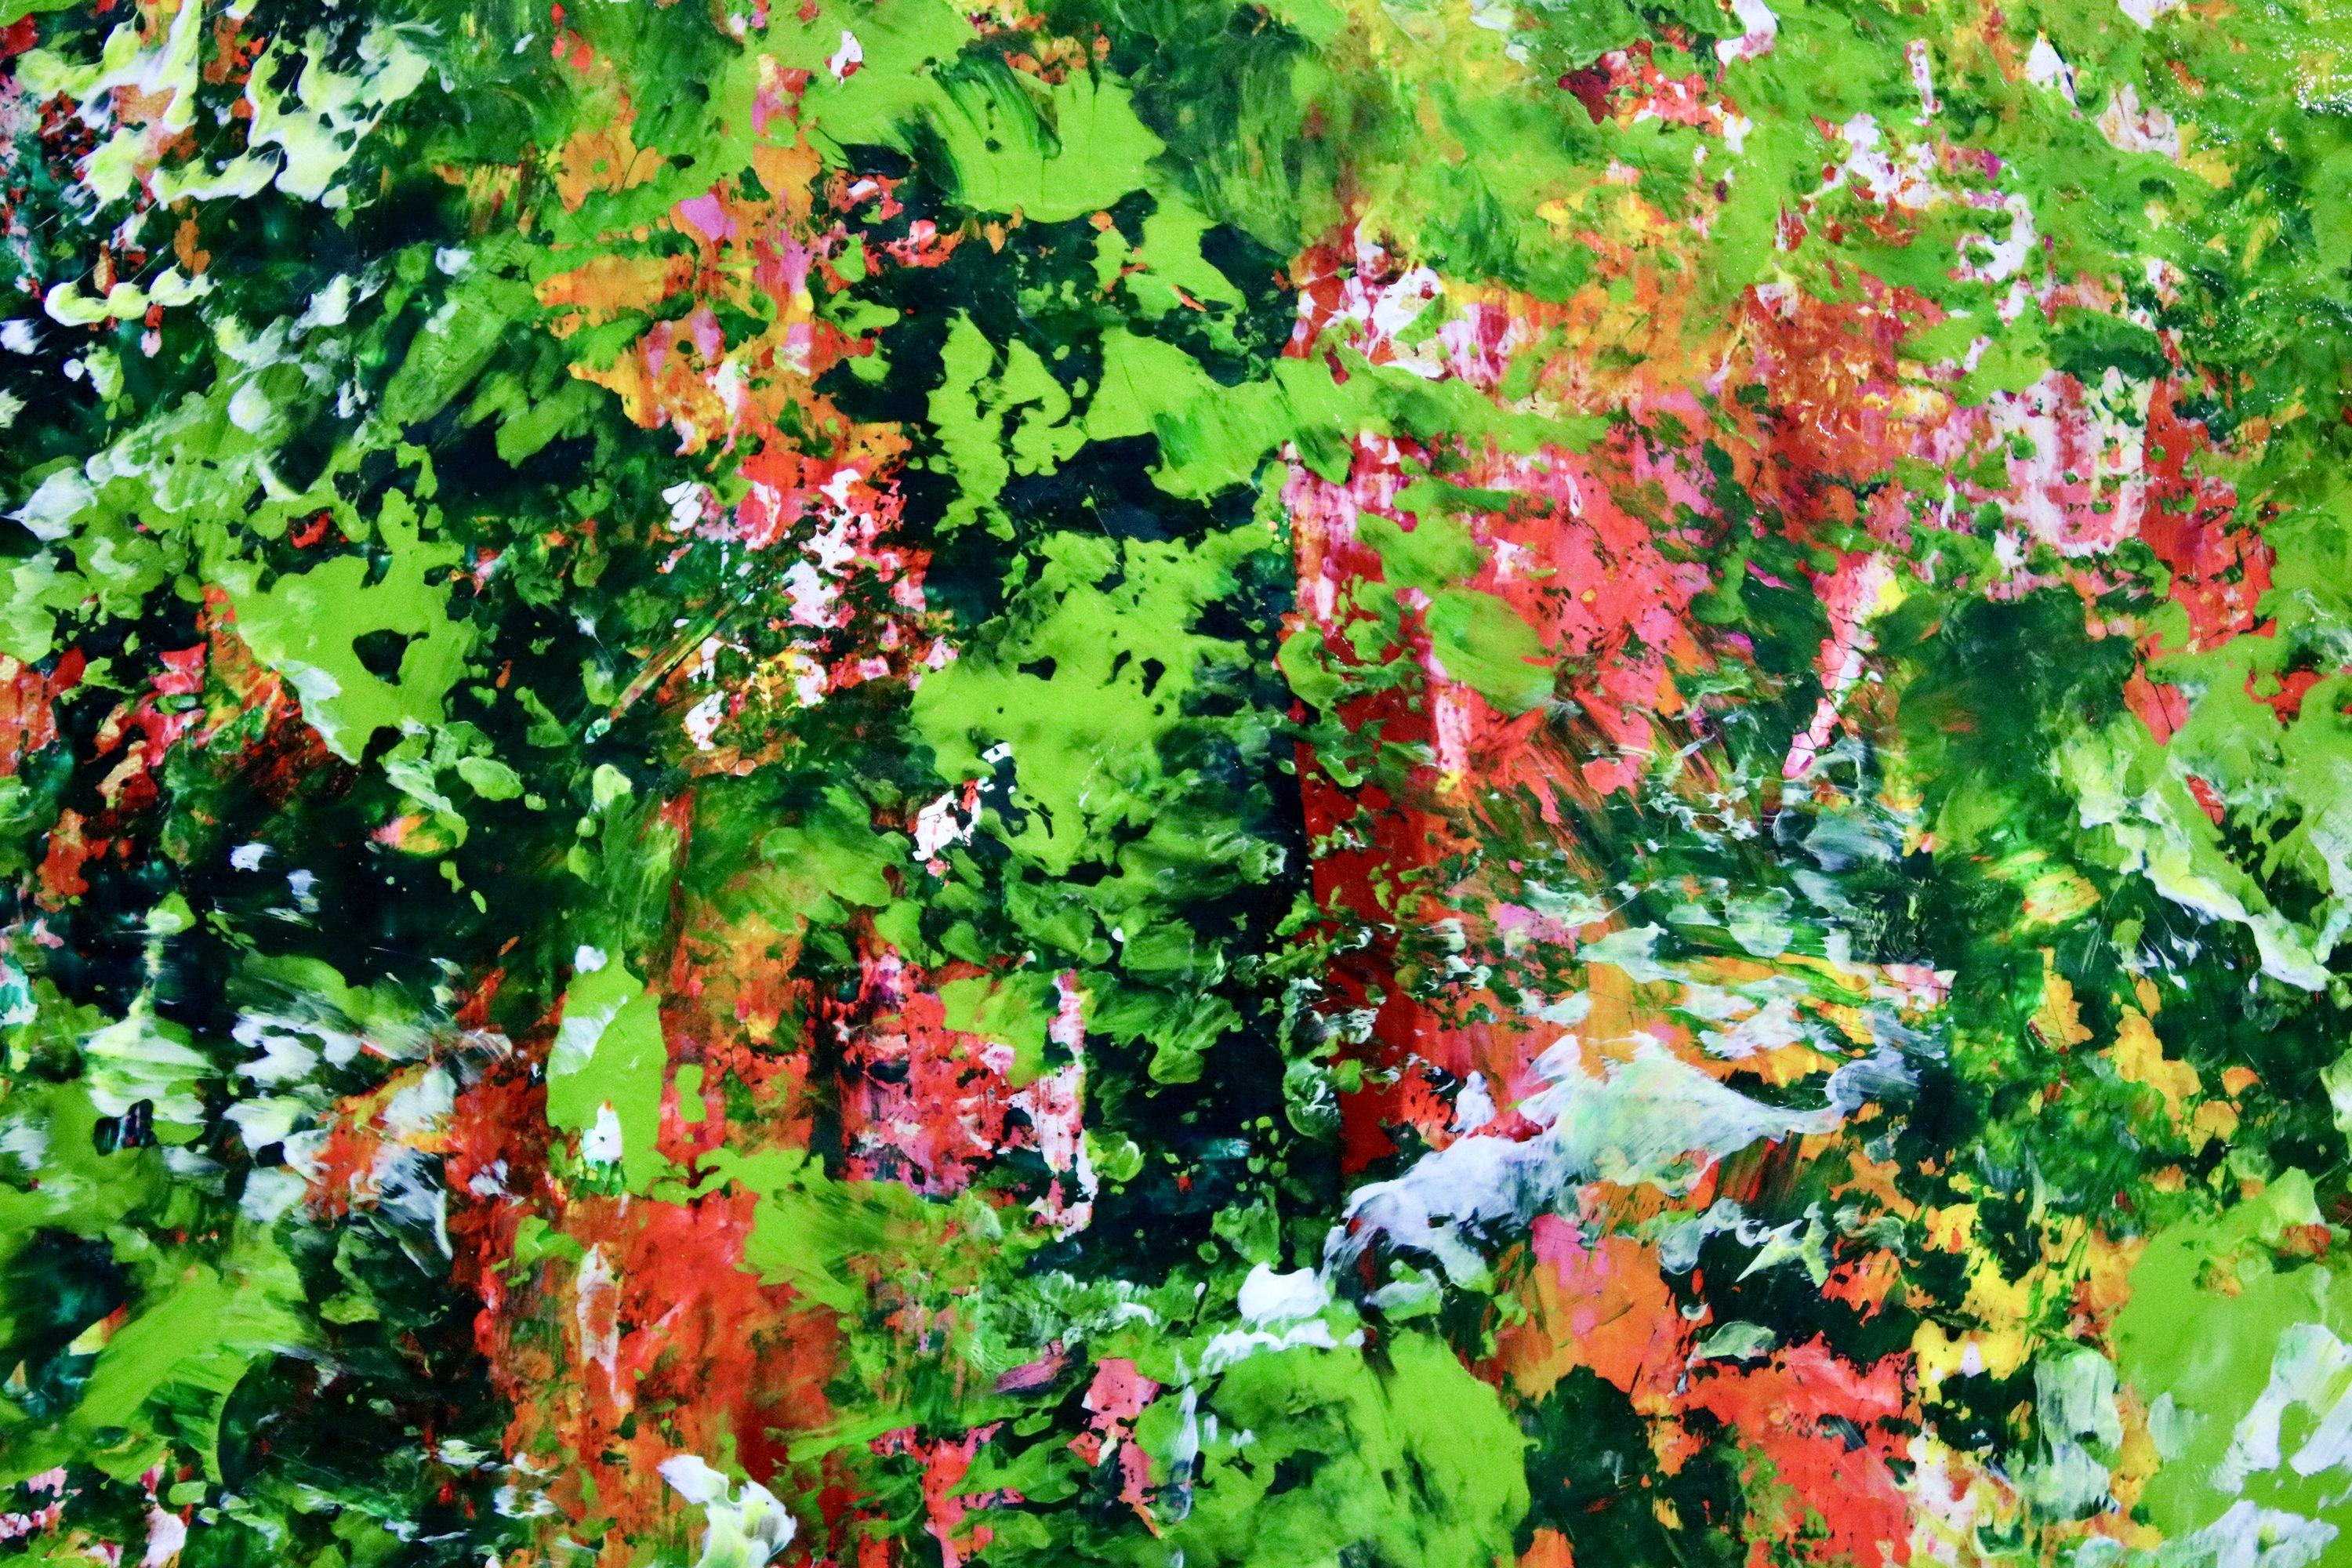 XL abstrakte Malerei  Acryl auf Leinwand    Großes, eindrucksvolles, abstraktes Werk, das von der Natur inspiriert ist, mit Grüntönen, die an die Tropen erinnern, und hellen Untertönen, wie Rosa, Orange, Rot und Gold. Viele Details und komplizierte